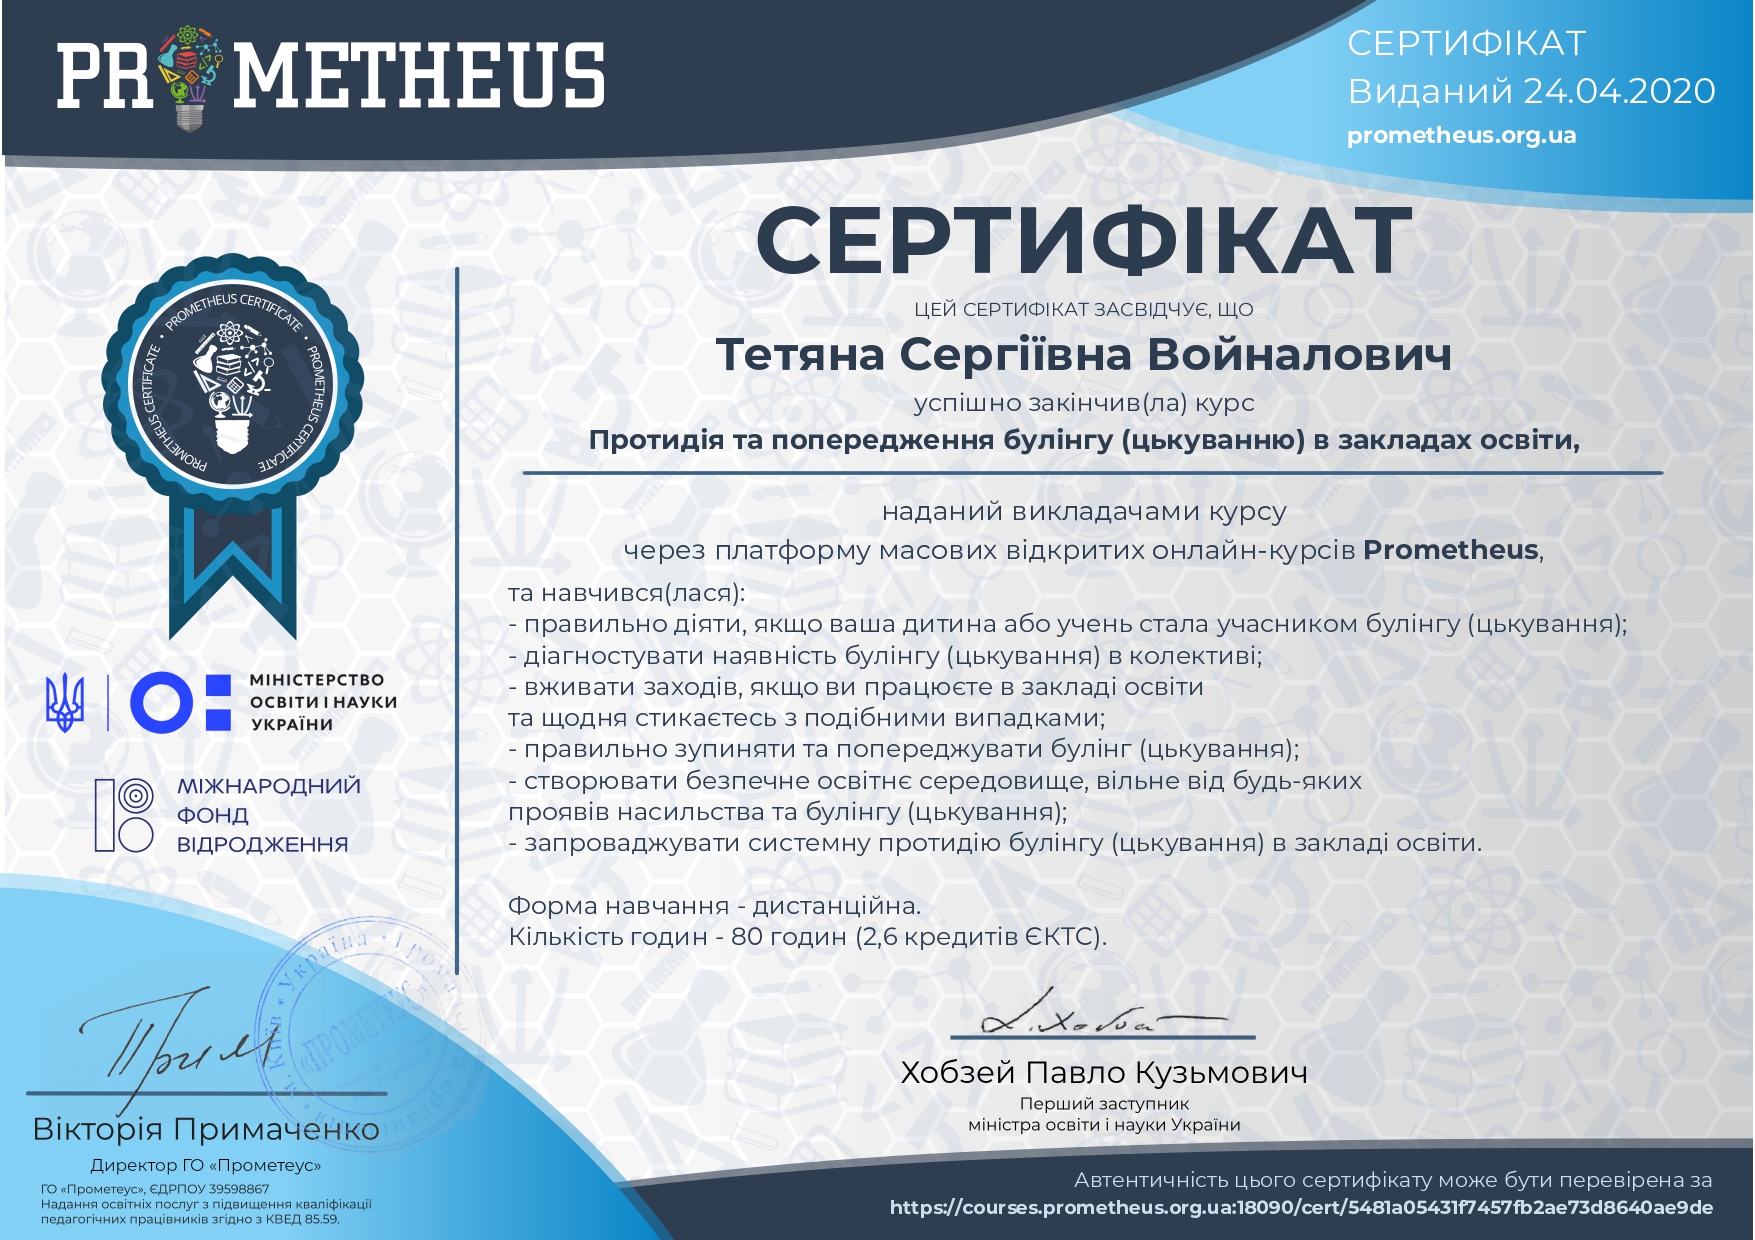   Сертифікат "Протидія та попередження булінгу (цькуванню) в закладах освіти"